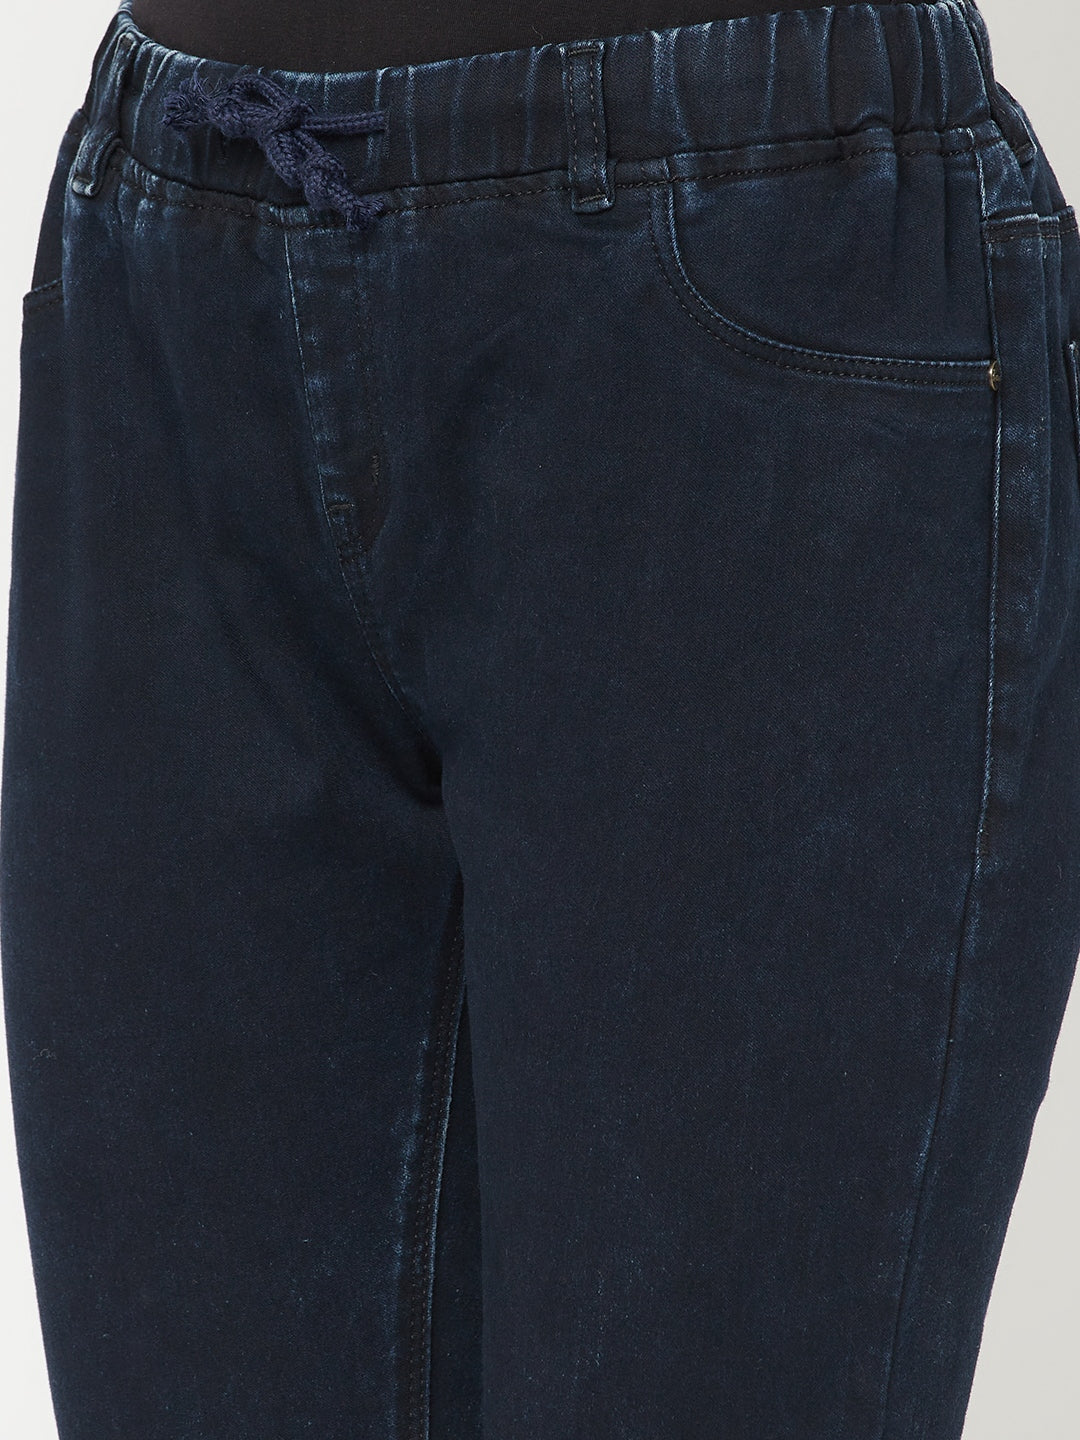 Navy Blue Jeans - Women Jeans